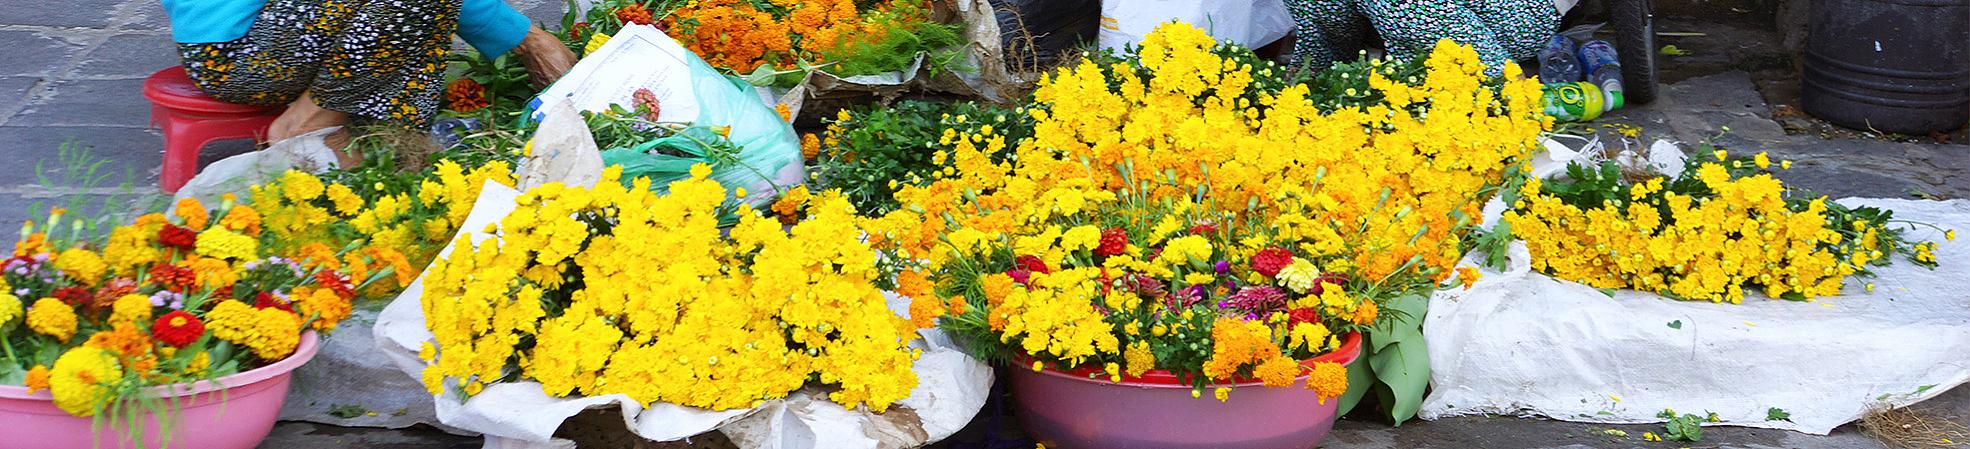 Flower Market, Vietnam